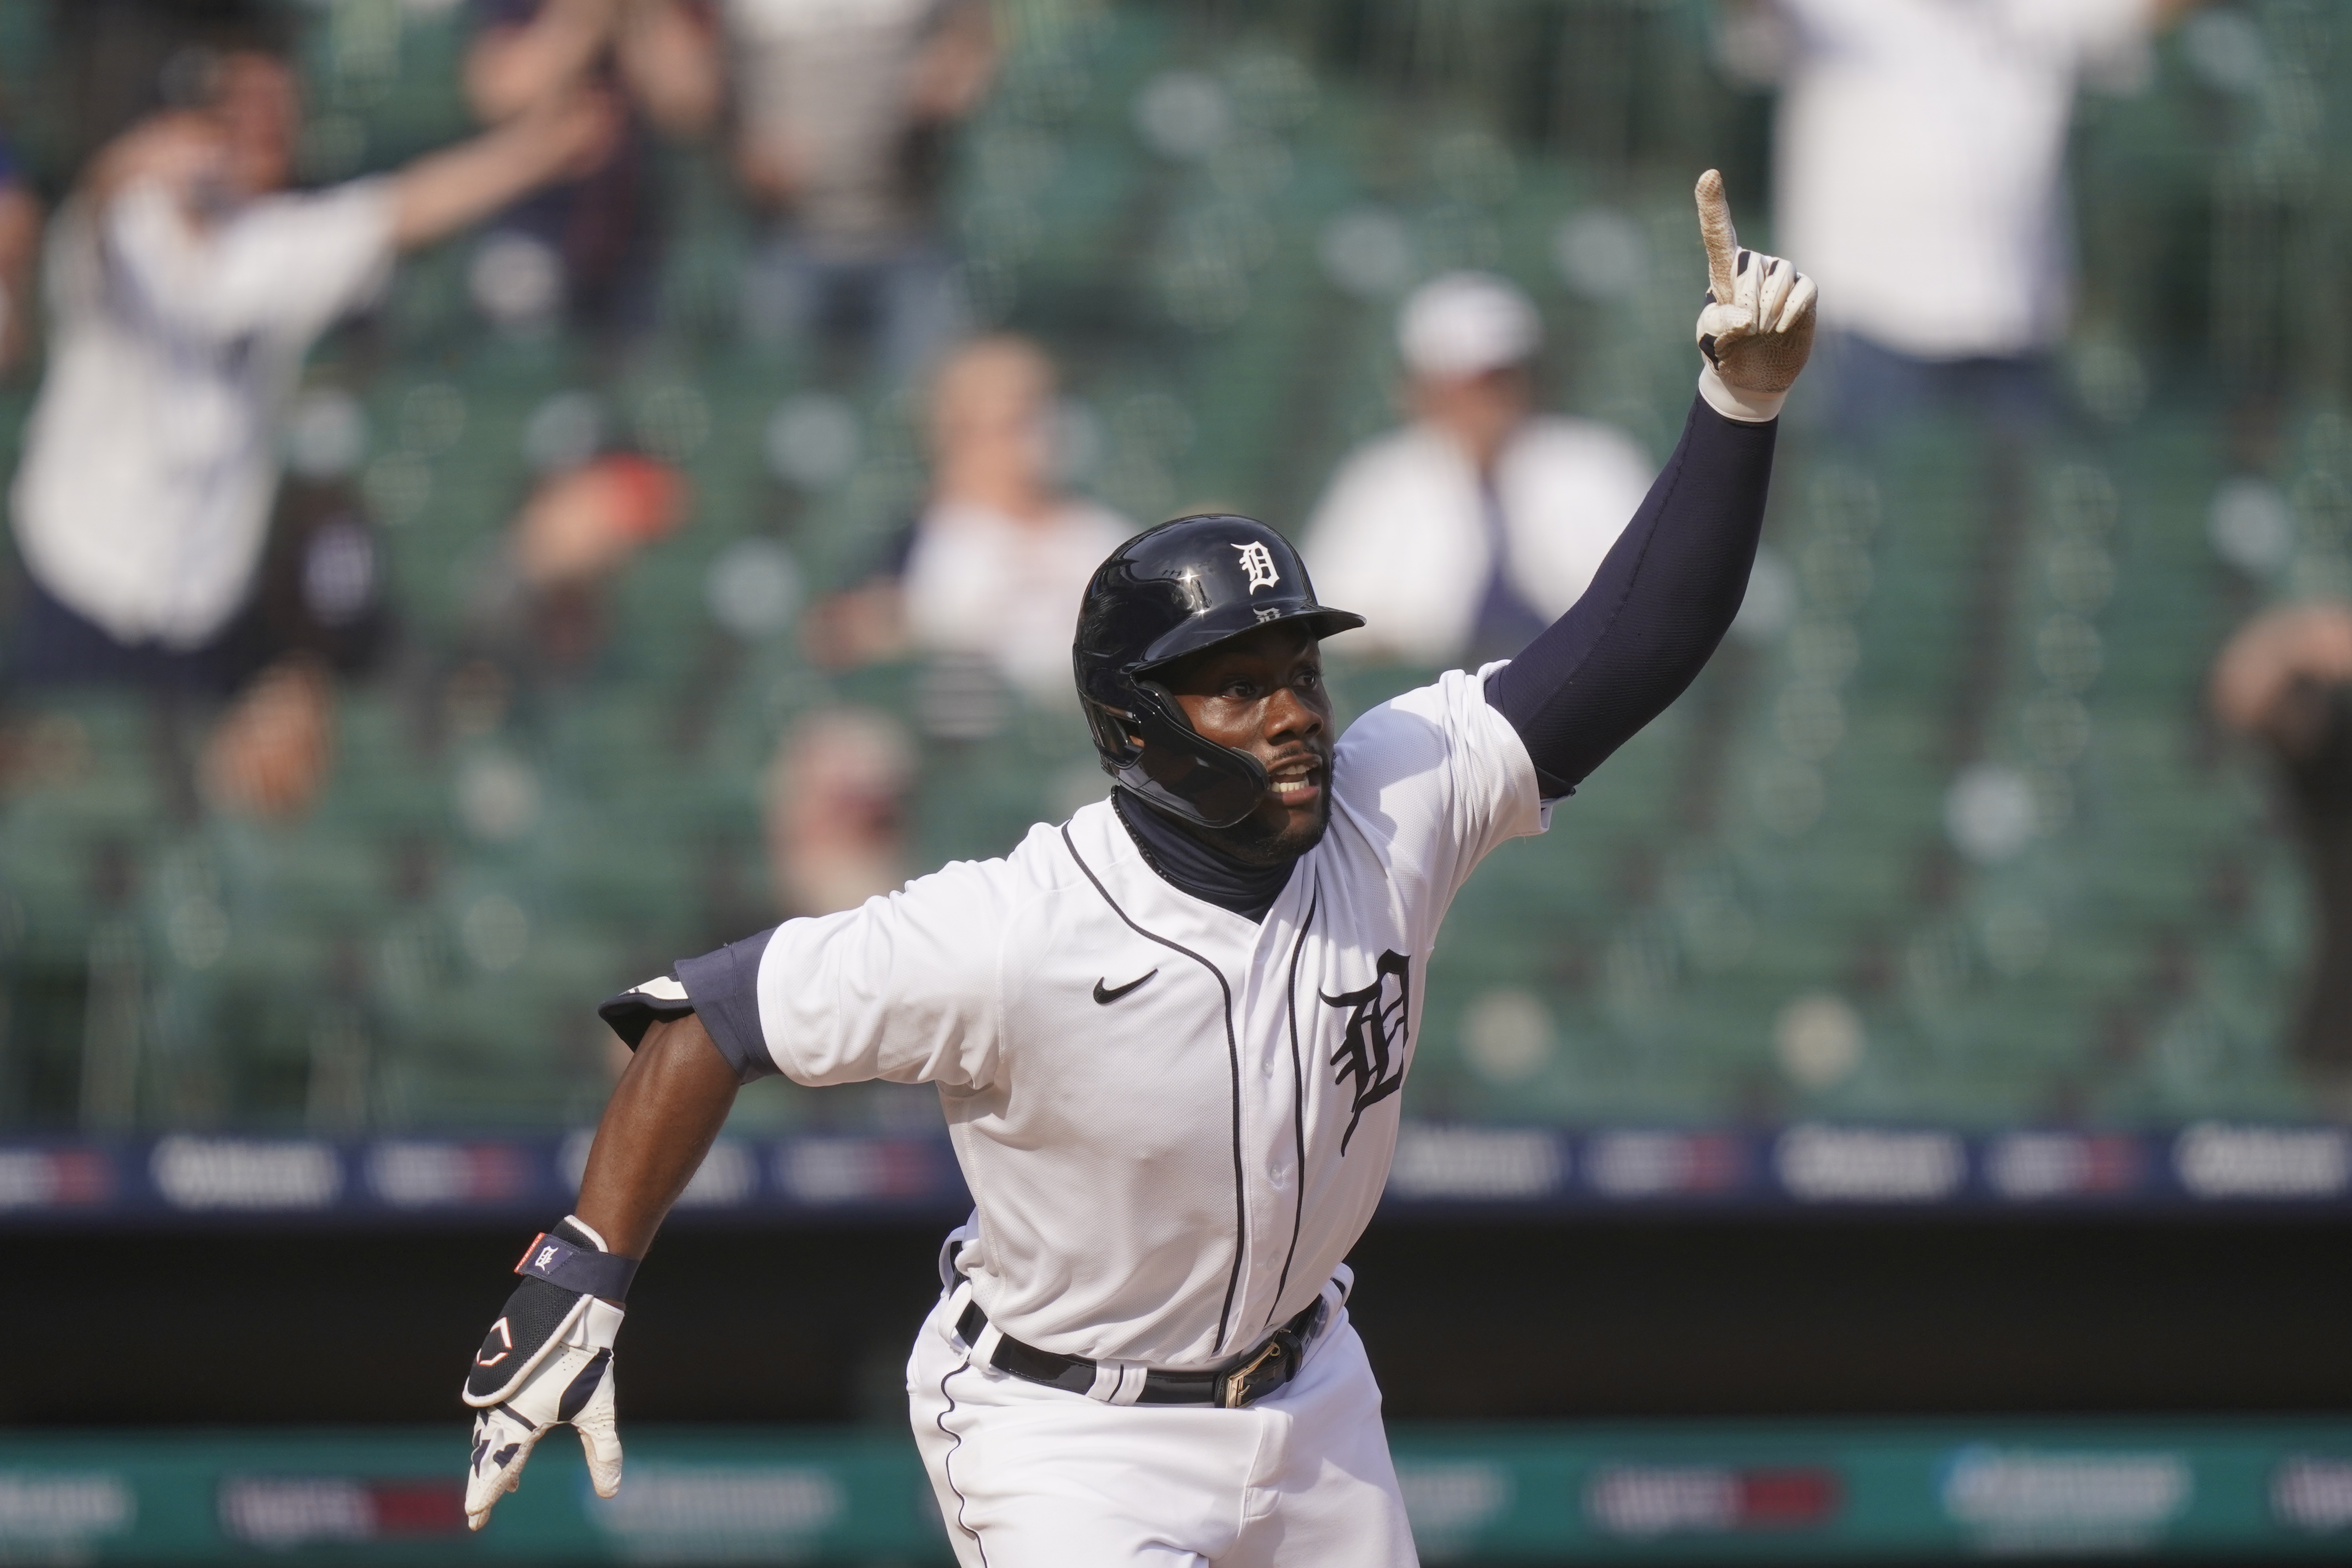 Detroit Tigers: Early projections on Akil Baddoo seem overzealous